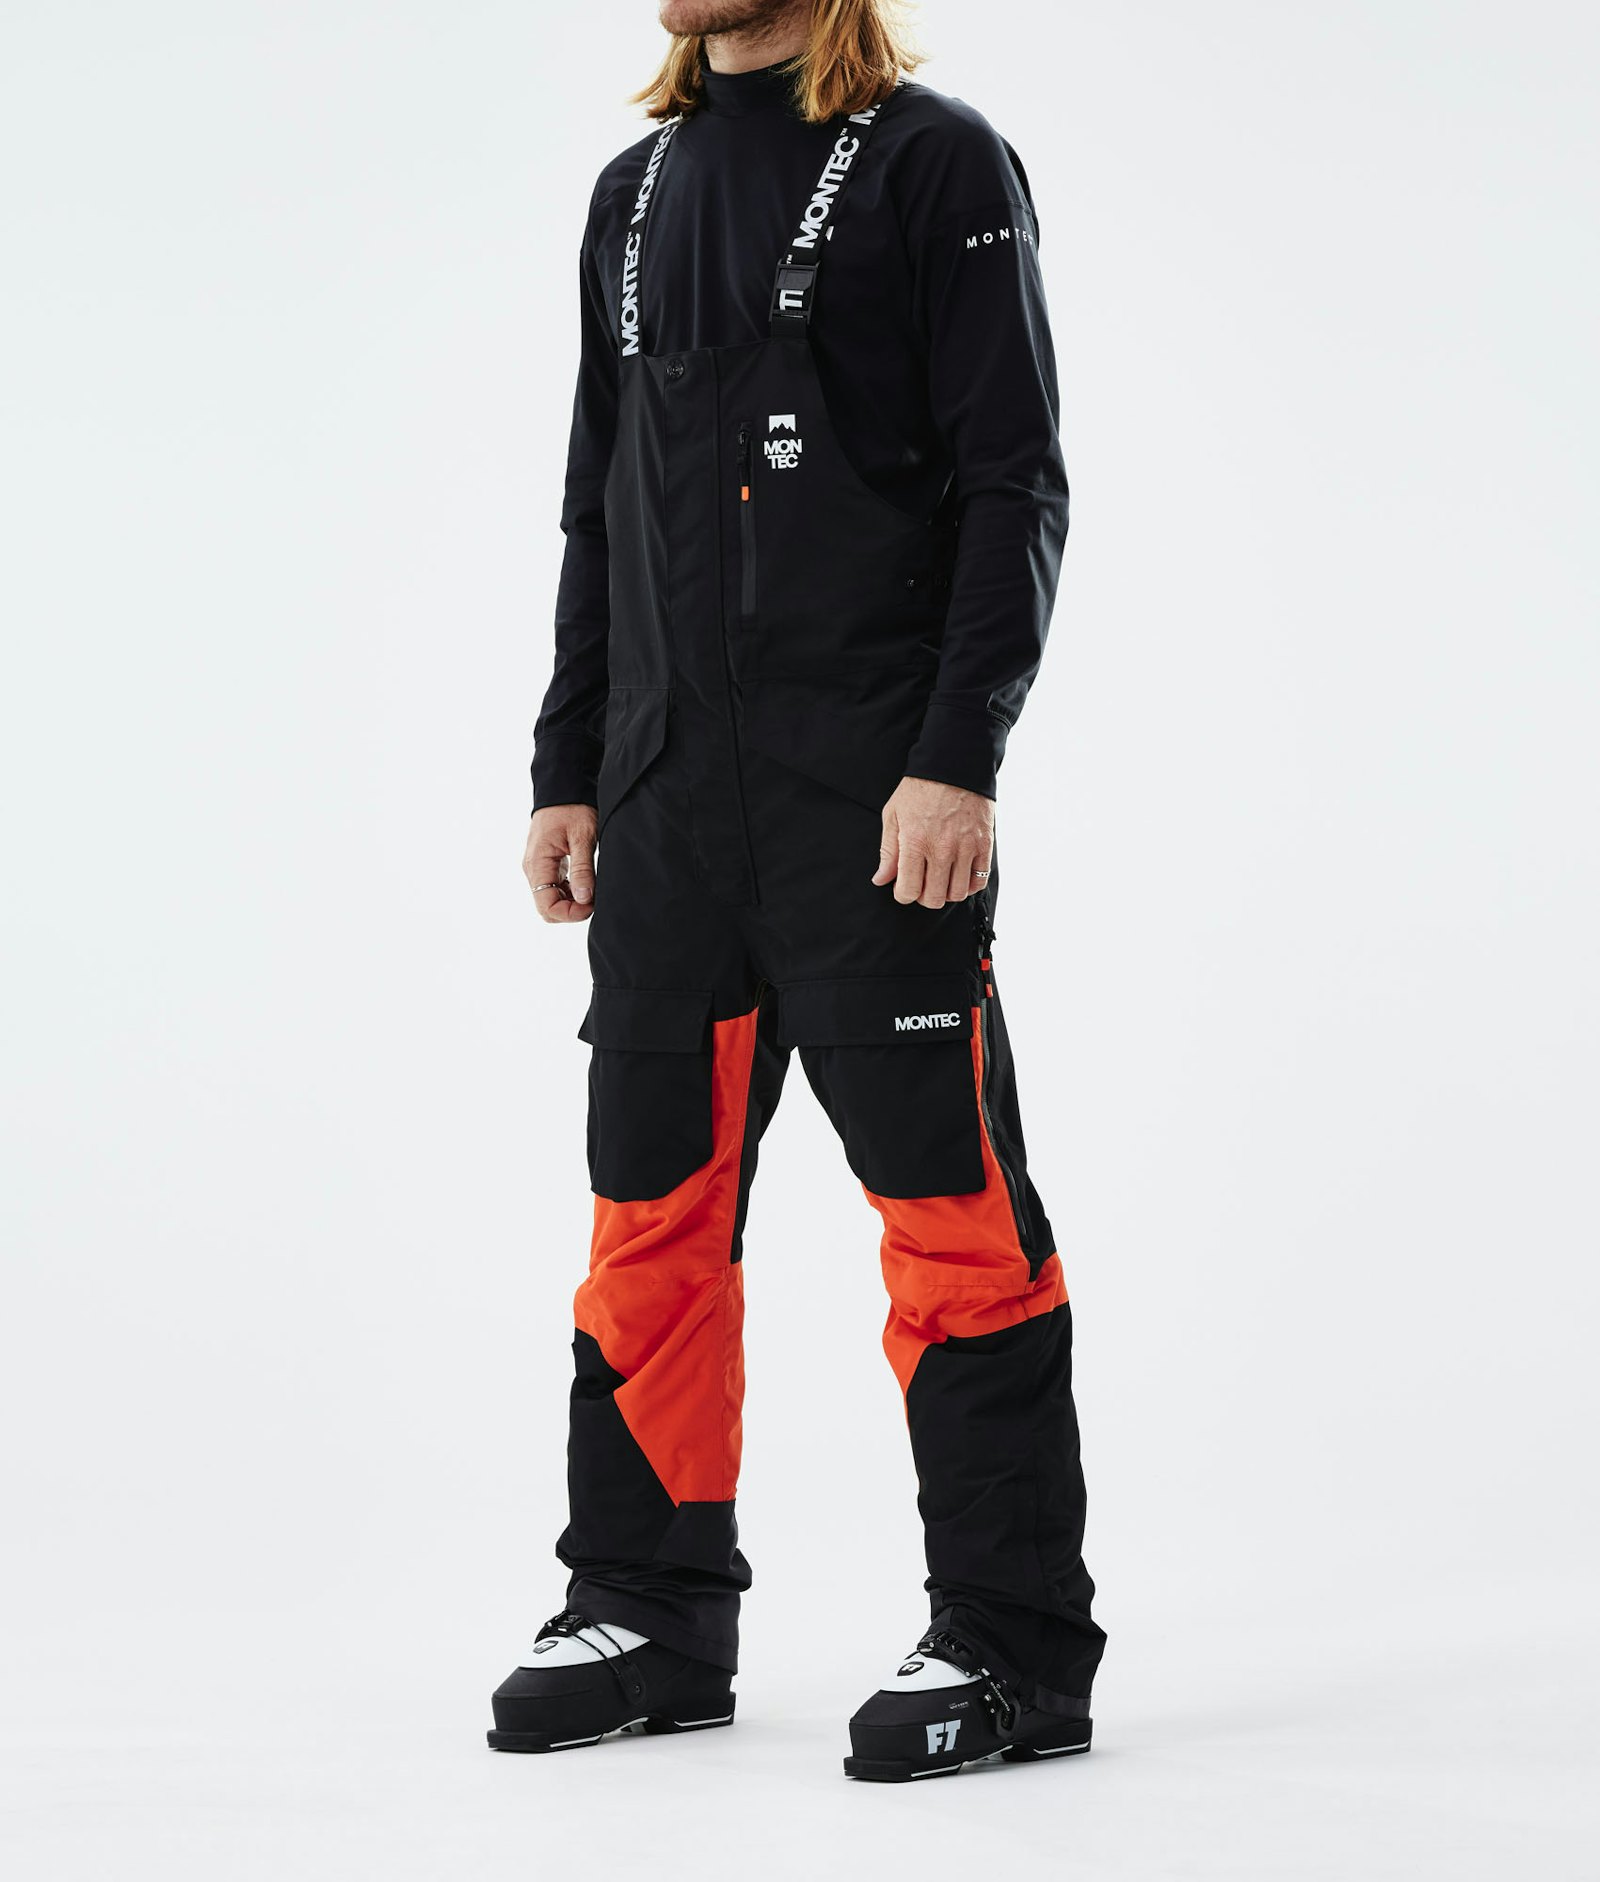 Fawk 2021 Pantaloni Sci Uomo Black/Orange